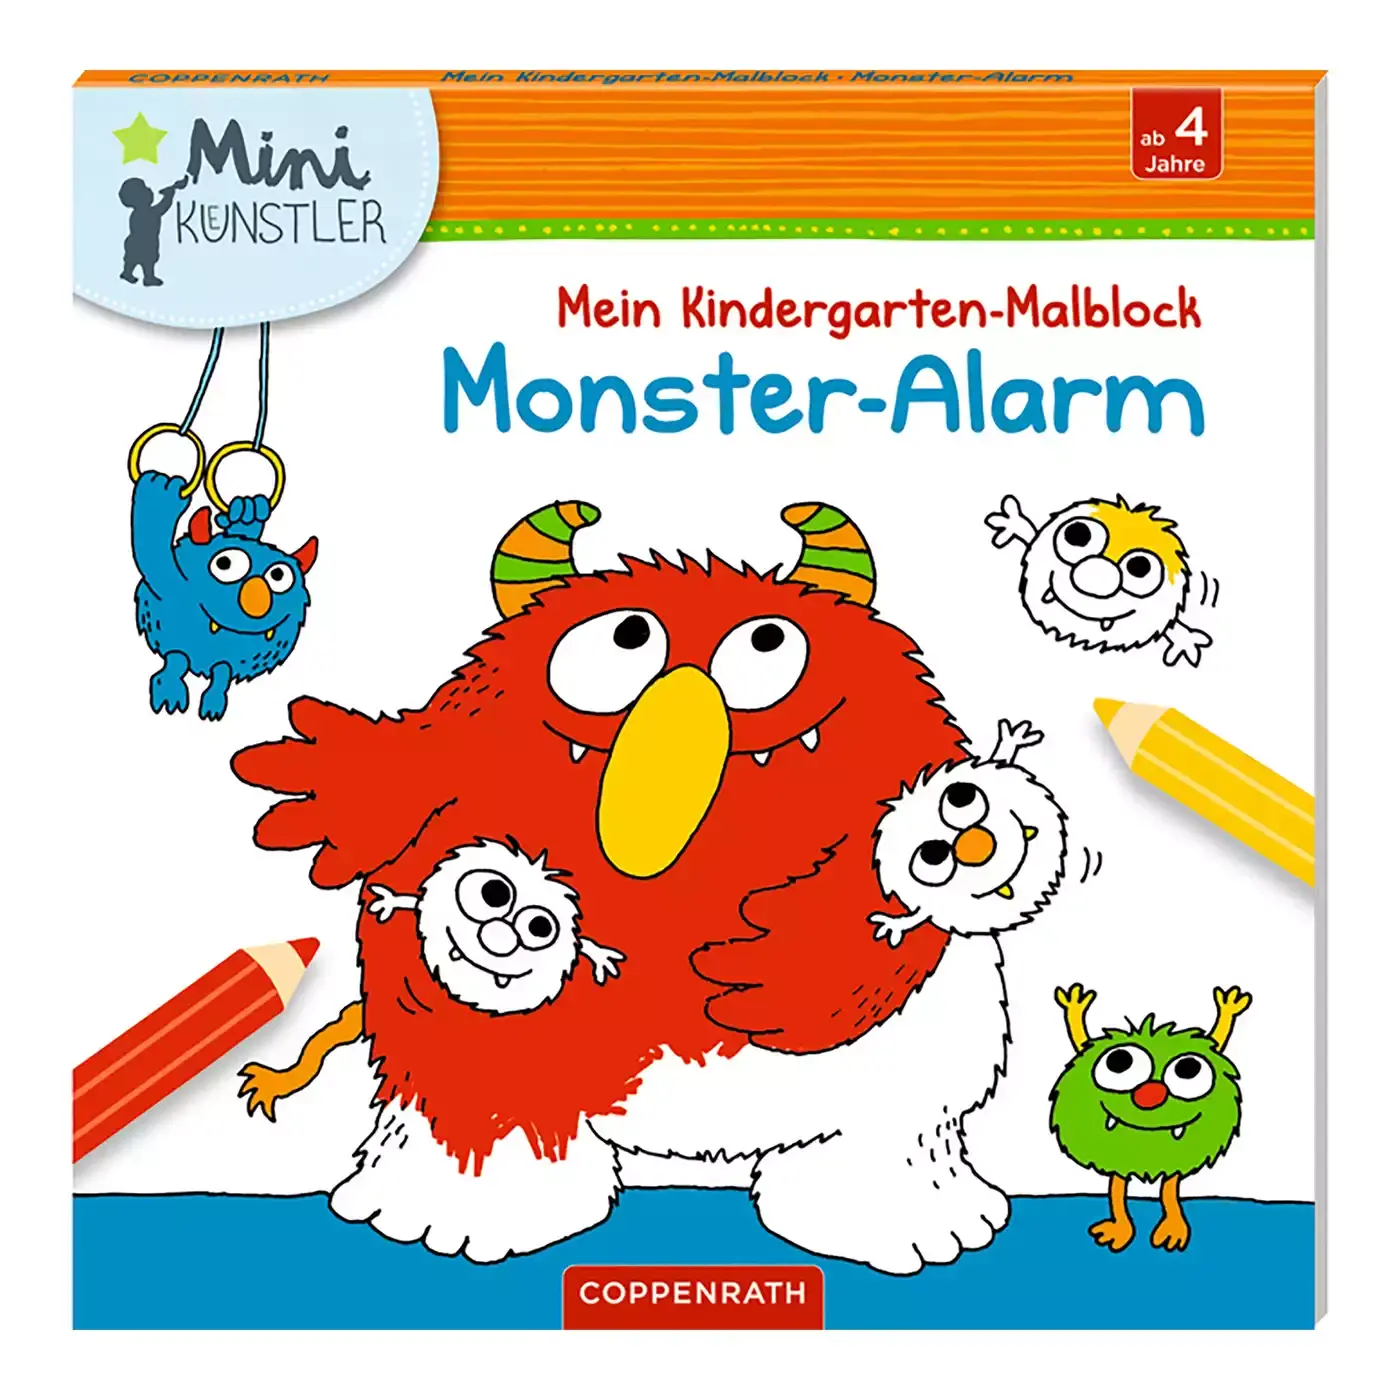 Mini-Künstler Mein Kindergarten-Malbuch Monster Alarm COPPENRATH 2000574969503 1